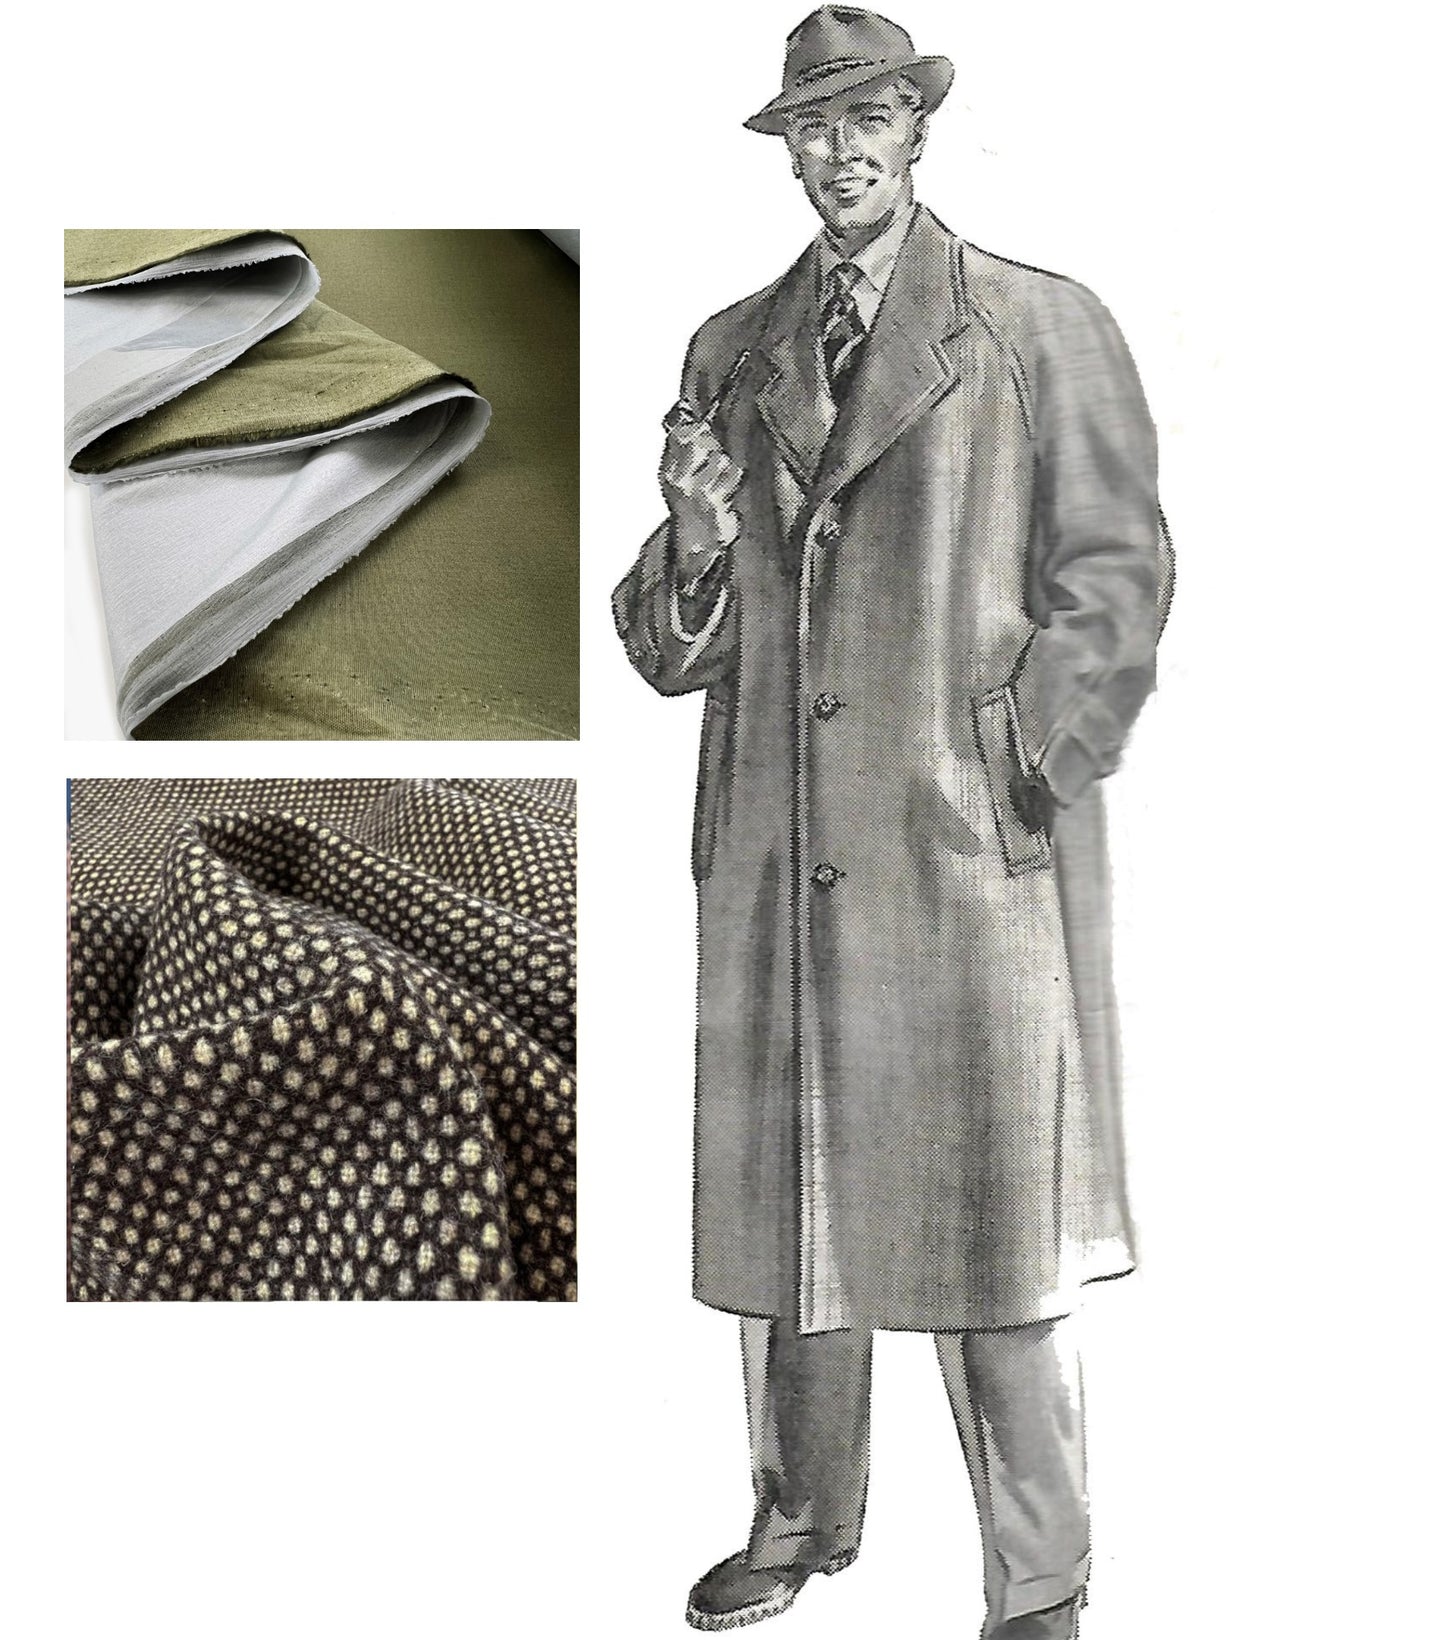 Vintage-Muster aus den 1950er Jahren – klassischer Herrenmantel – Brustumfang 40 Zoll (101,6 cm)